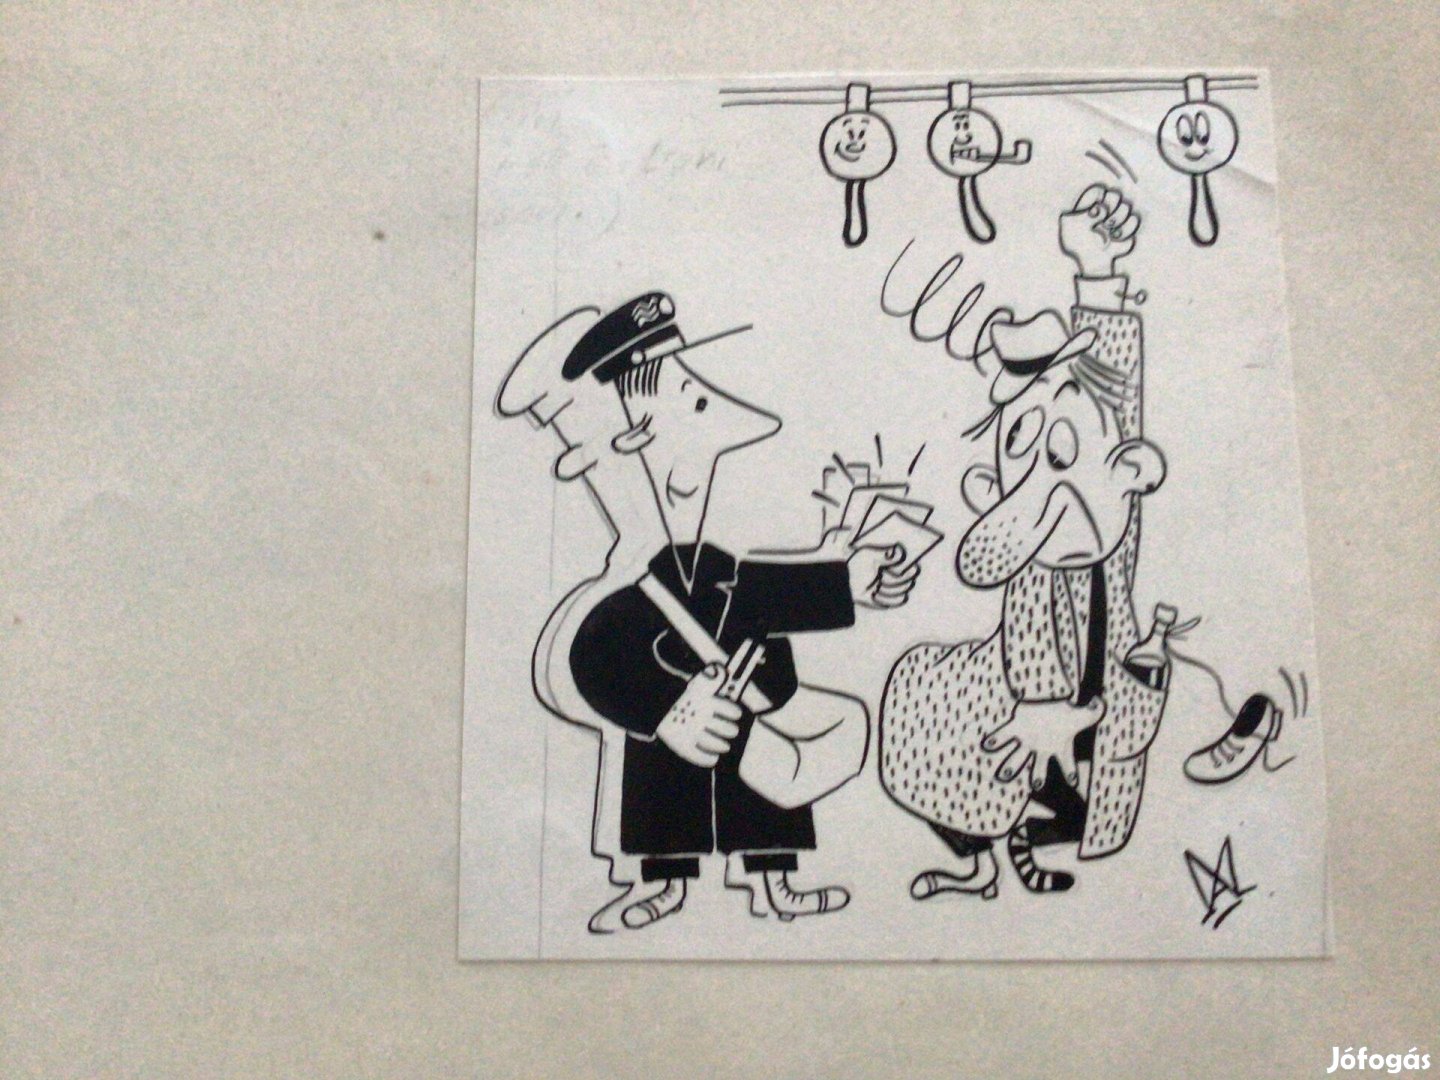 Mészáros András eredeti karikatúra rajza a Szabad Száj c. lapba